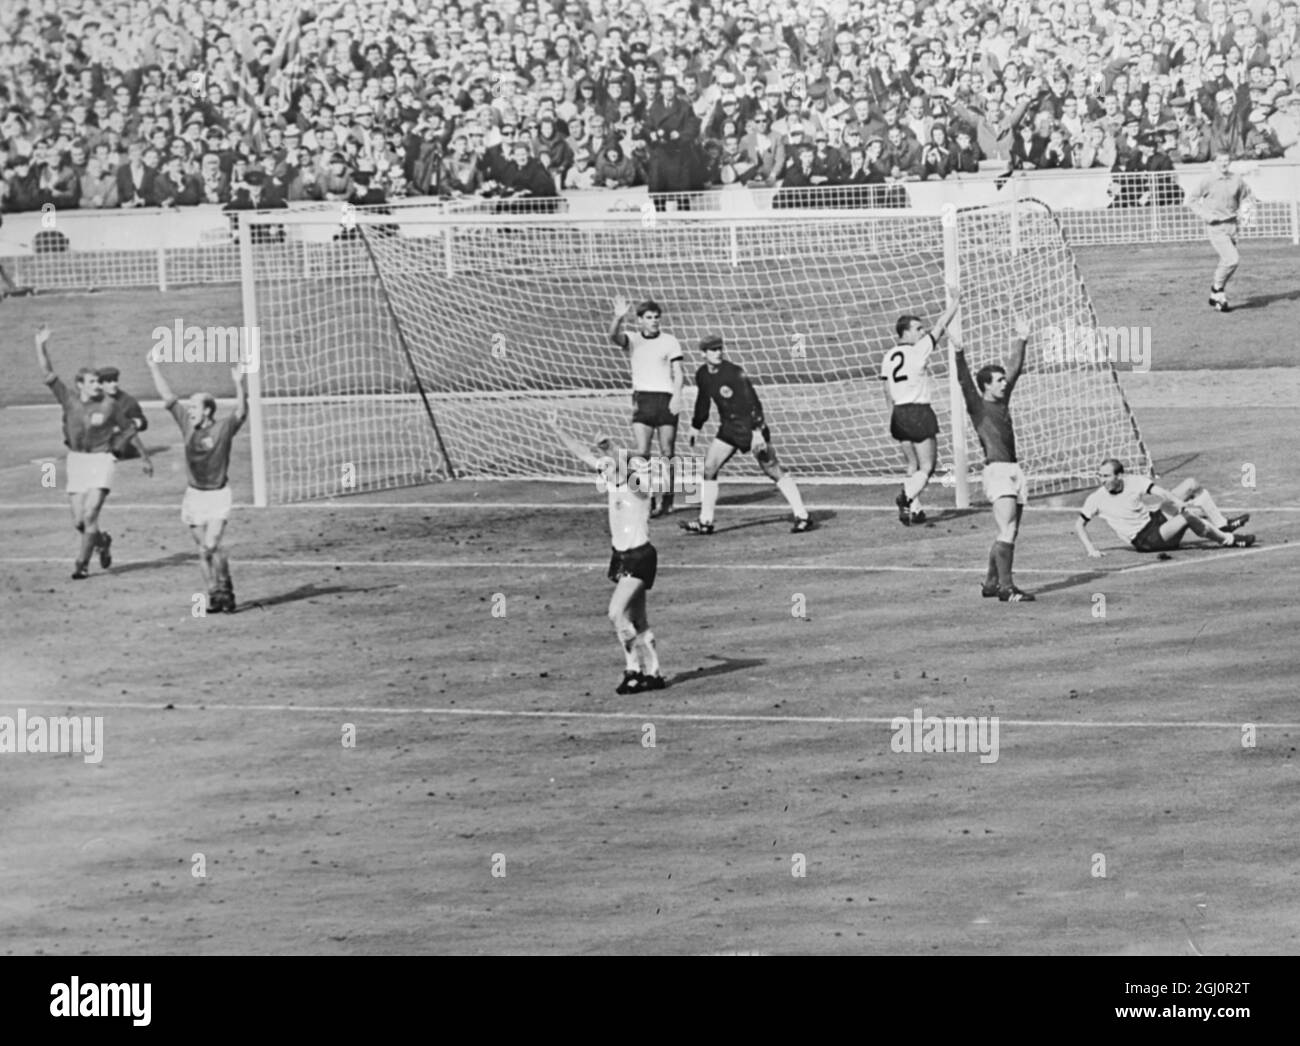 Terzo traguardo contraversiale . Wembely , Inghilterra : Dark - Shirted England Players , Roger H (sinistra ) , Bobby Charlton and Goal Sector , Geoff Hurst (destra ) Appello all'arbitro come i giocatori della Germania occidentale protestano dopo che Hurst aveva segnato l'Inghilterra contraversial terzo gol nella finale della Coppa del mondo 1966 a Wembley ieri . La palla colpì la traversa e rimbalzò verso il basso . Tutti i giocatori inglesi hanno sostenuto che la palla aveva attraversato la linea. L'arbitro ha assegnato il traguardo dopo aver consultato il lineman russo . 30 luglio 1966 Foto Stock